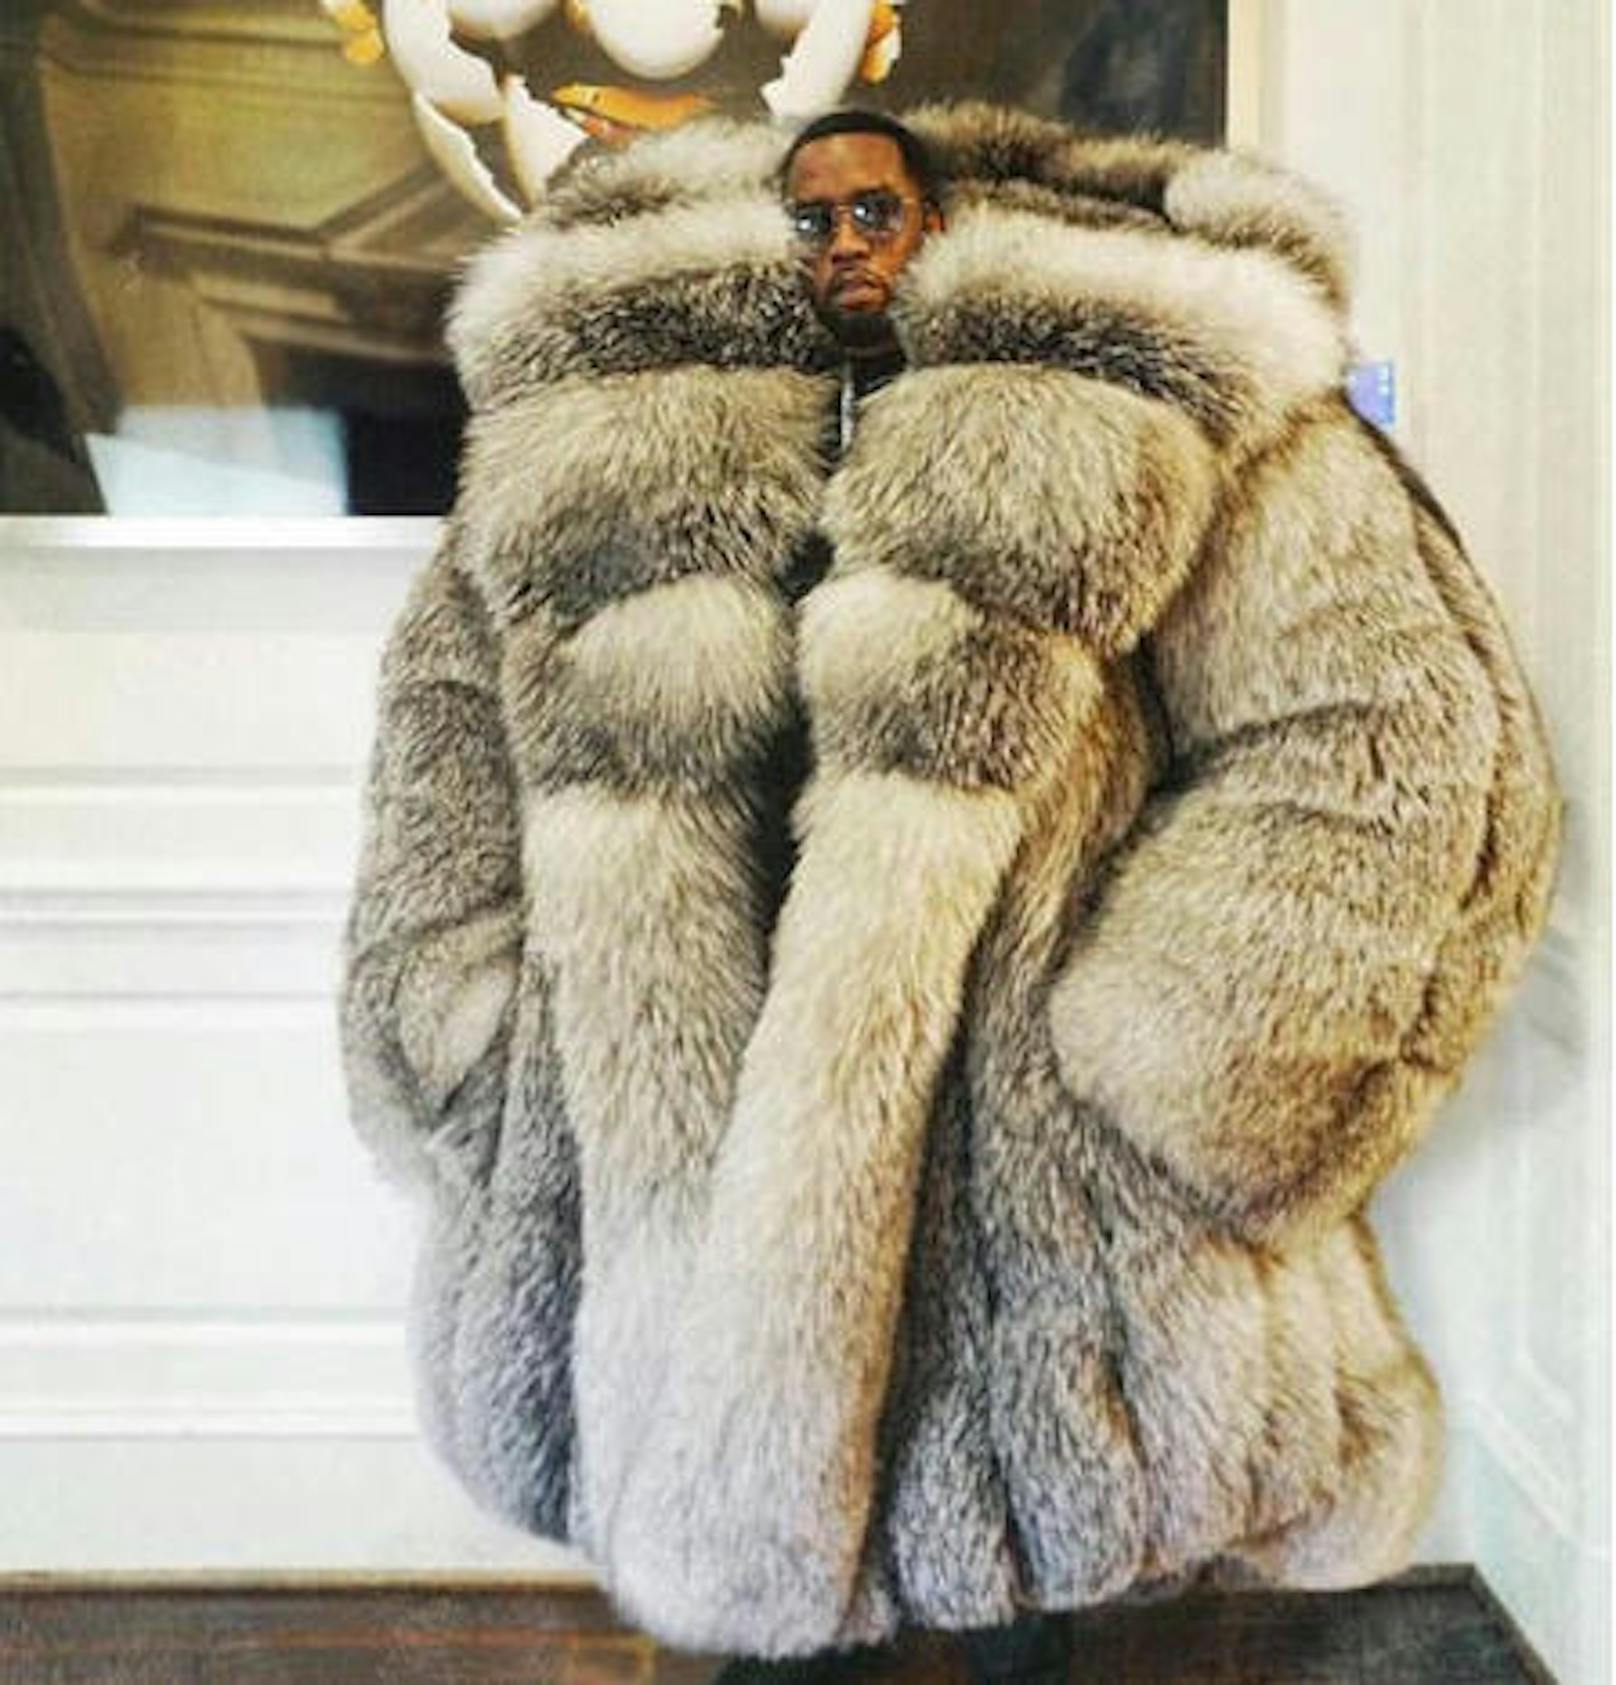 Diddy steht auf Pelz, das Netz auf Photoshop. Diesen Mantel hat Diddy so nie getragen. Lustig ist es trotzdem